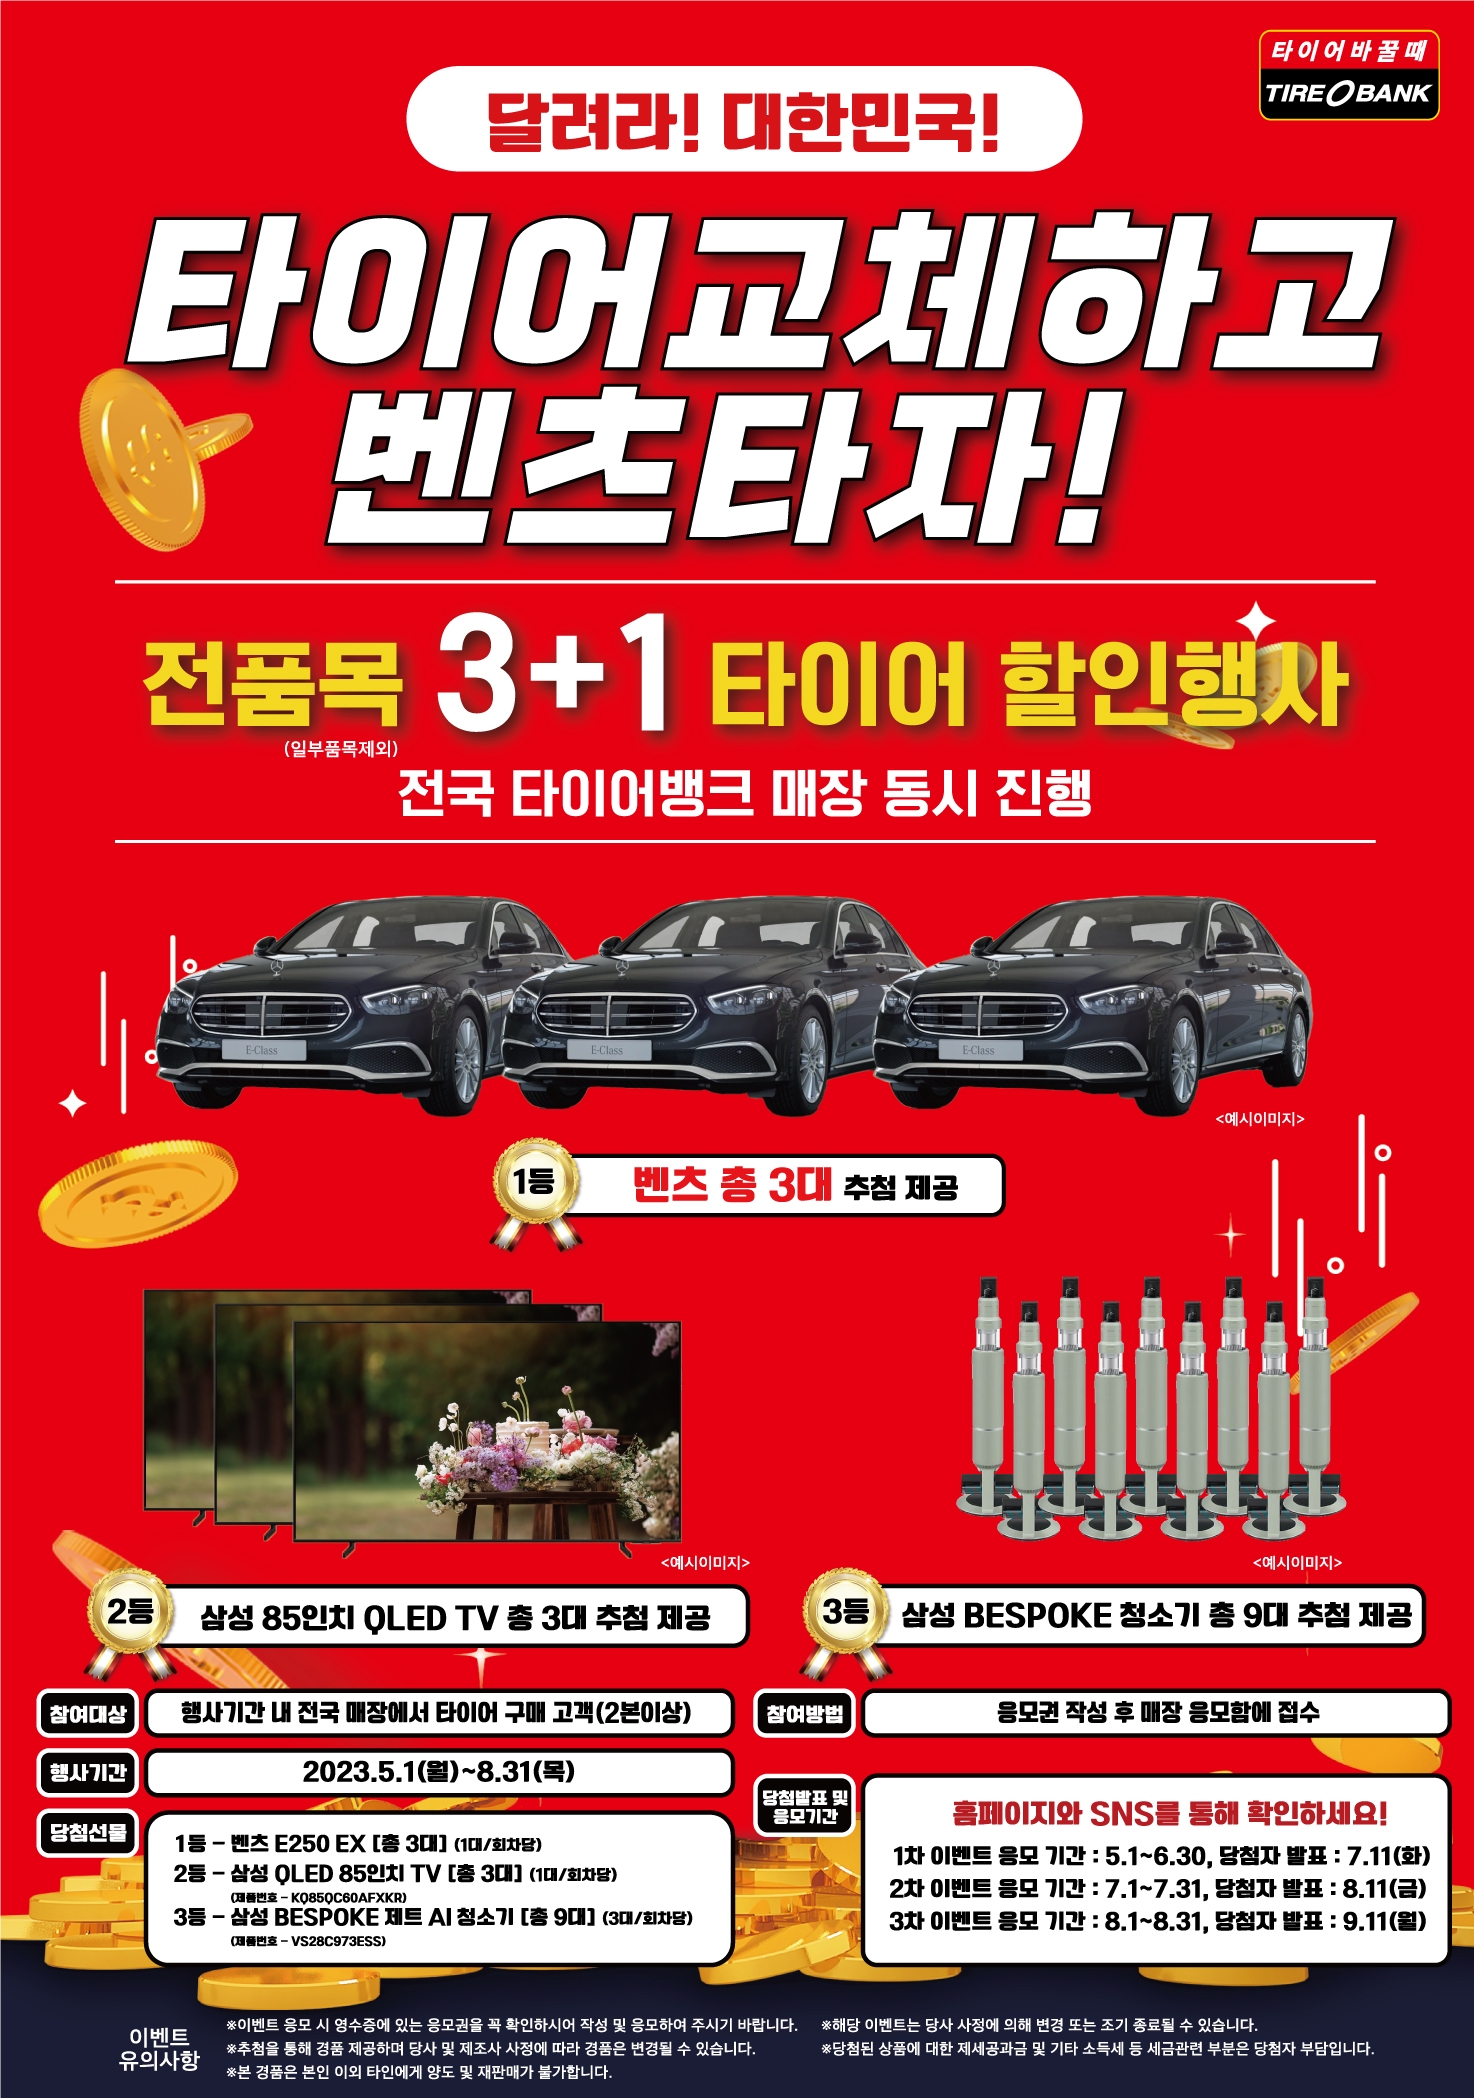 [산업단신] 타이어뱅크, ‘달려라 대한민국’ 전국 매장 동시 이벤트 진행